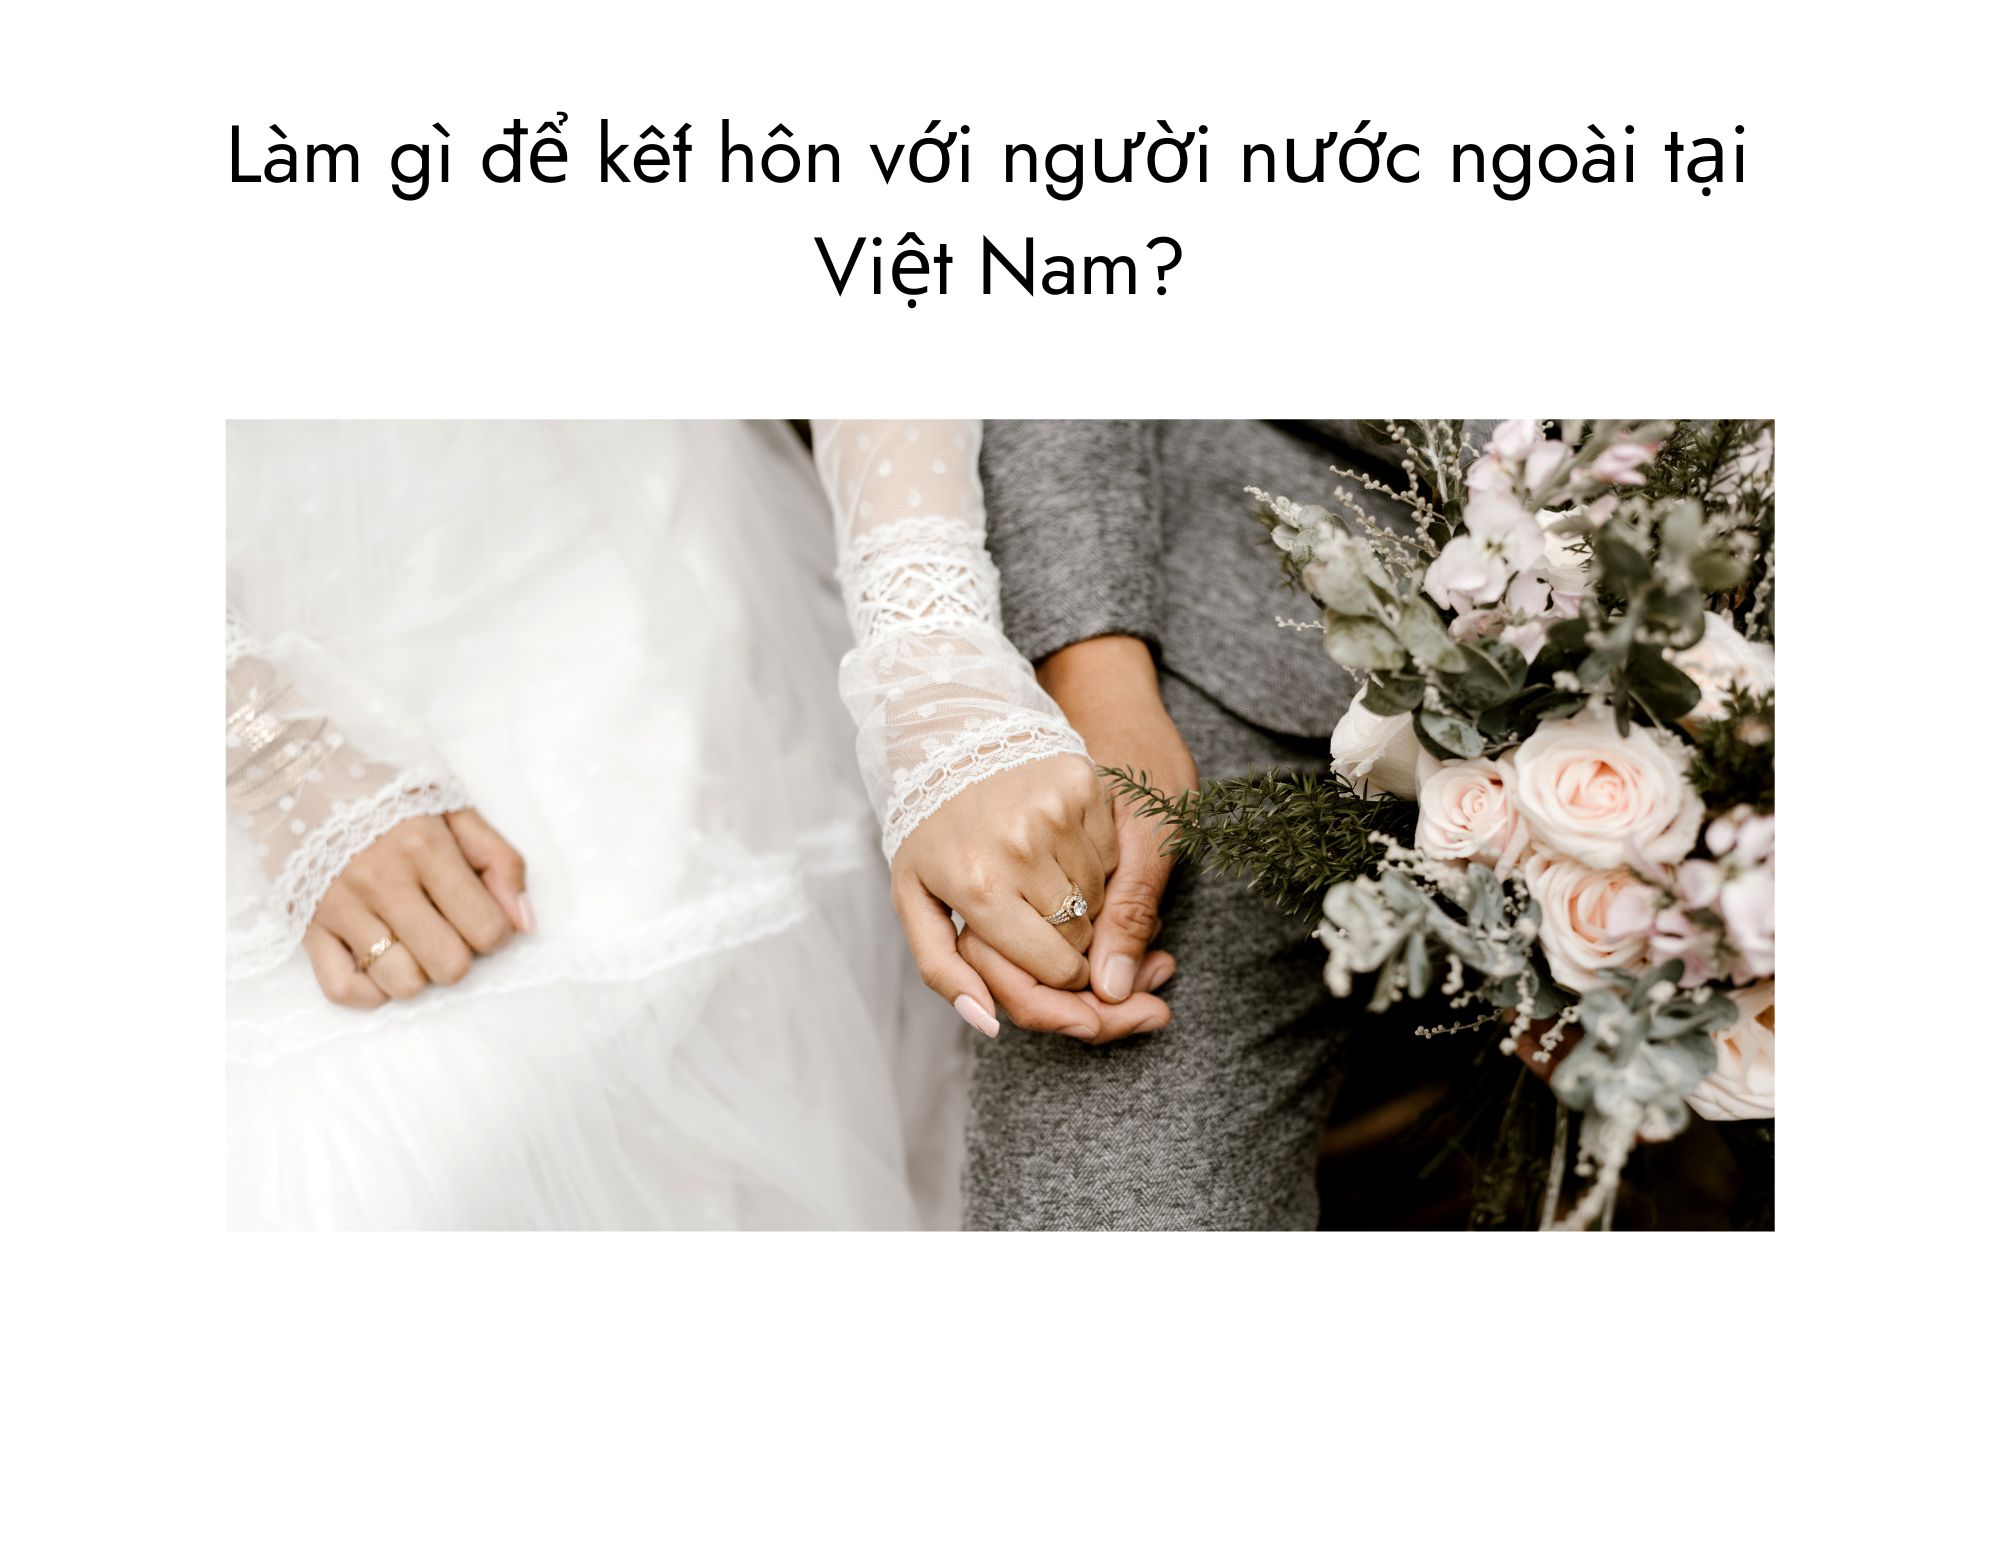 Làm gì để kết hôn với người nước ngoài tại Việt Nam?